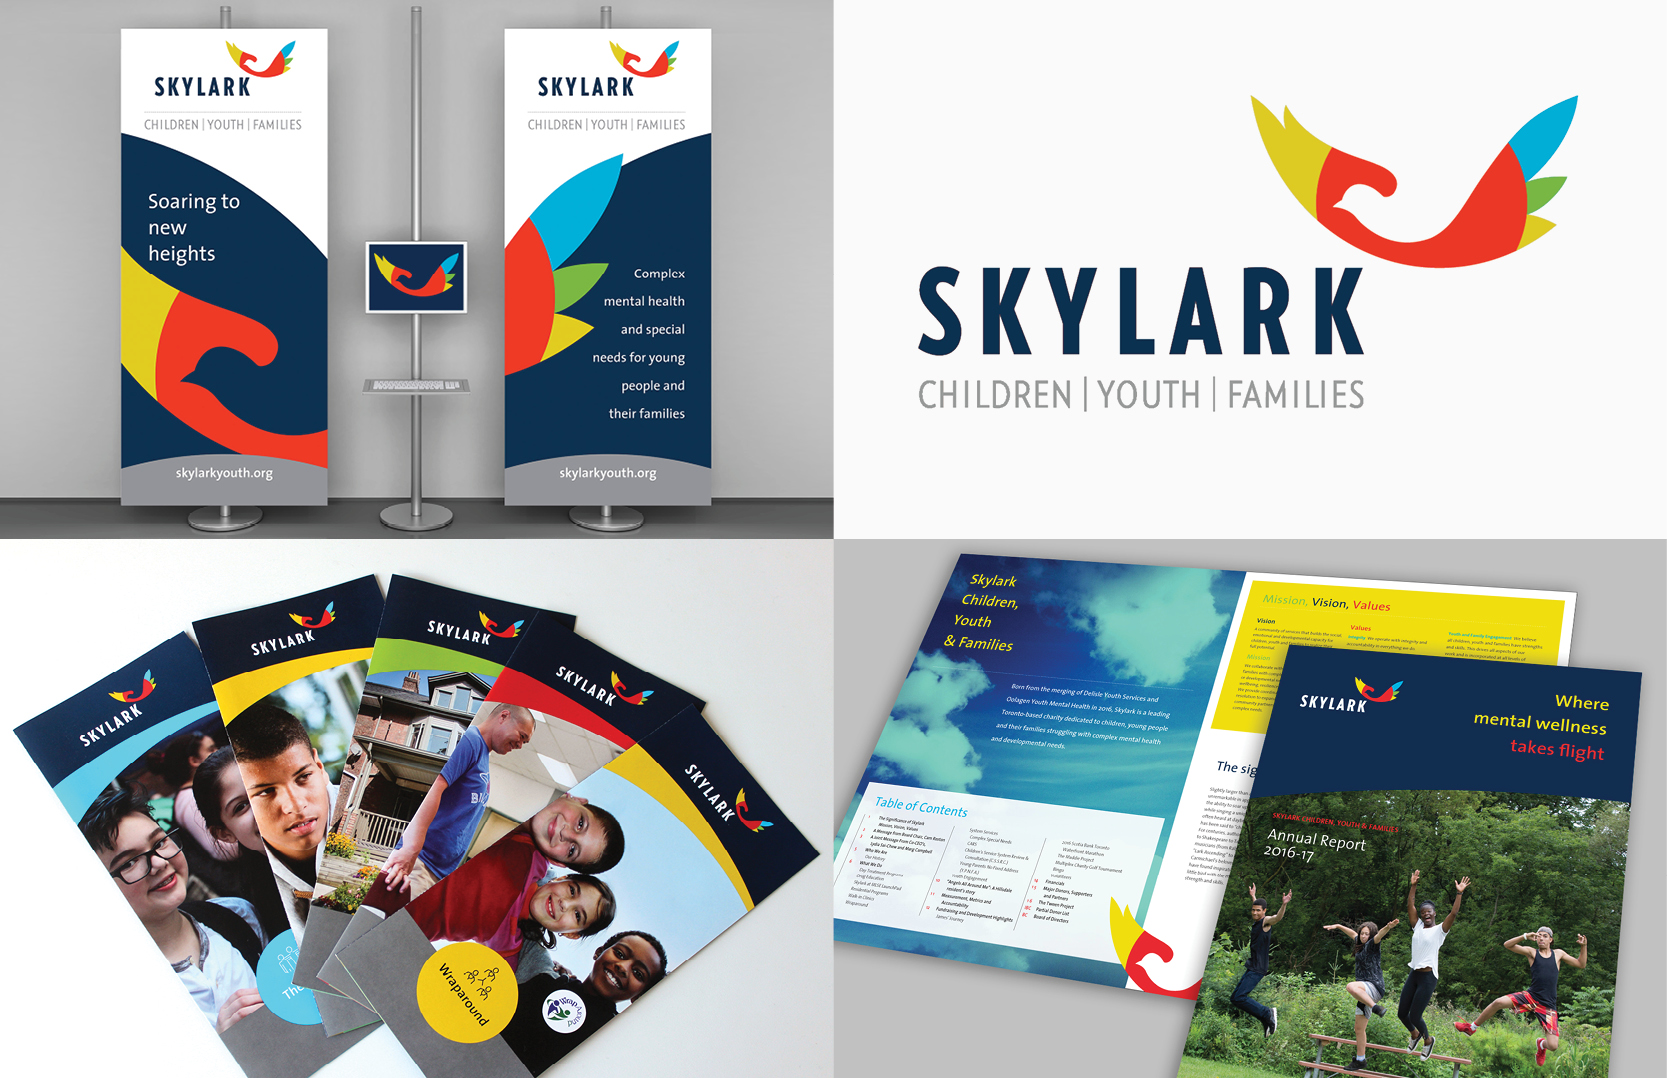 Skylark Children, Youth & Families